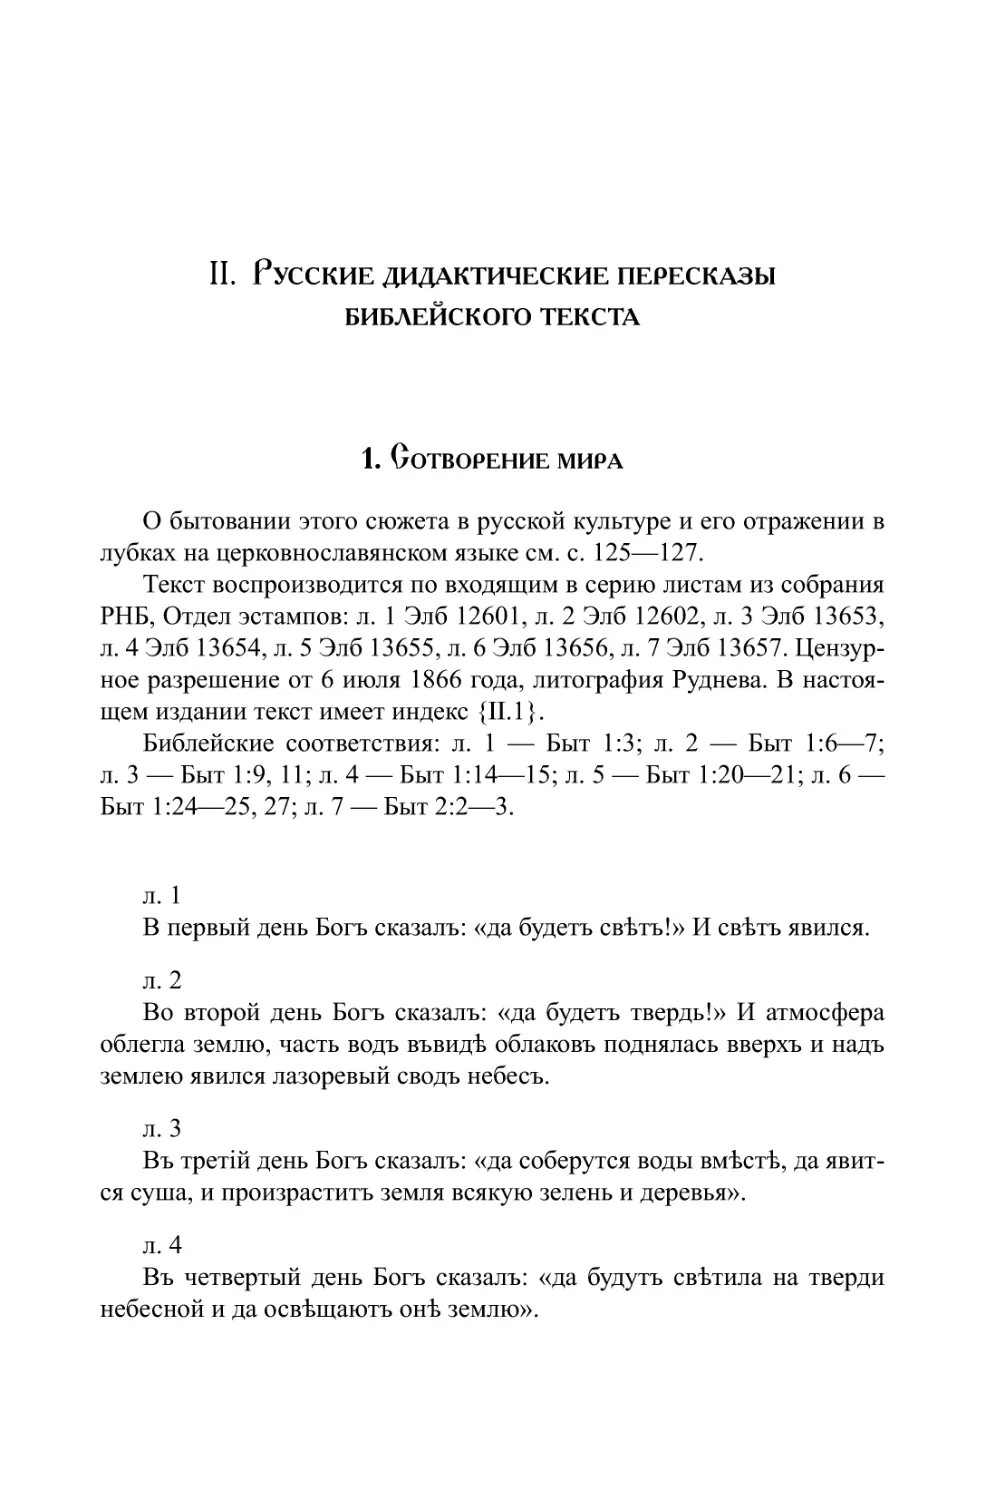 II. Русские дидактические пересказы библейского текста